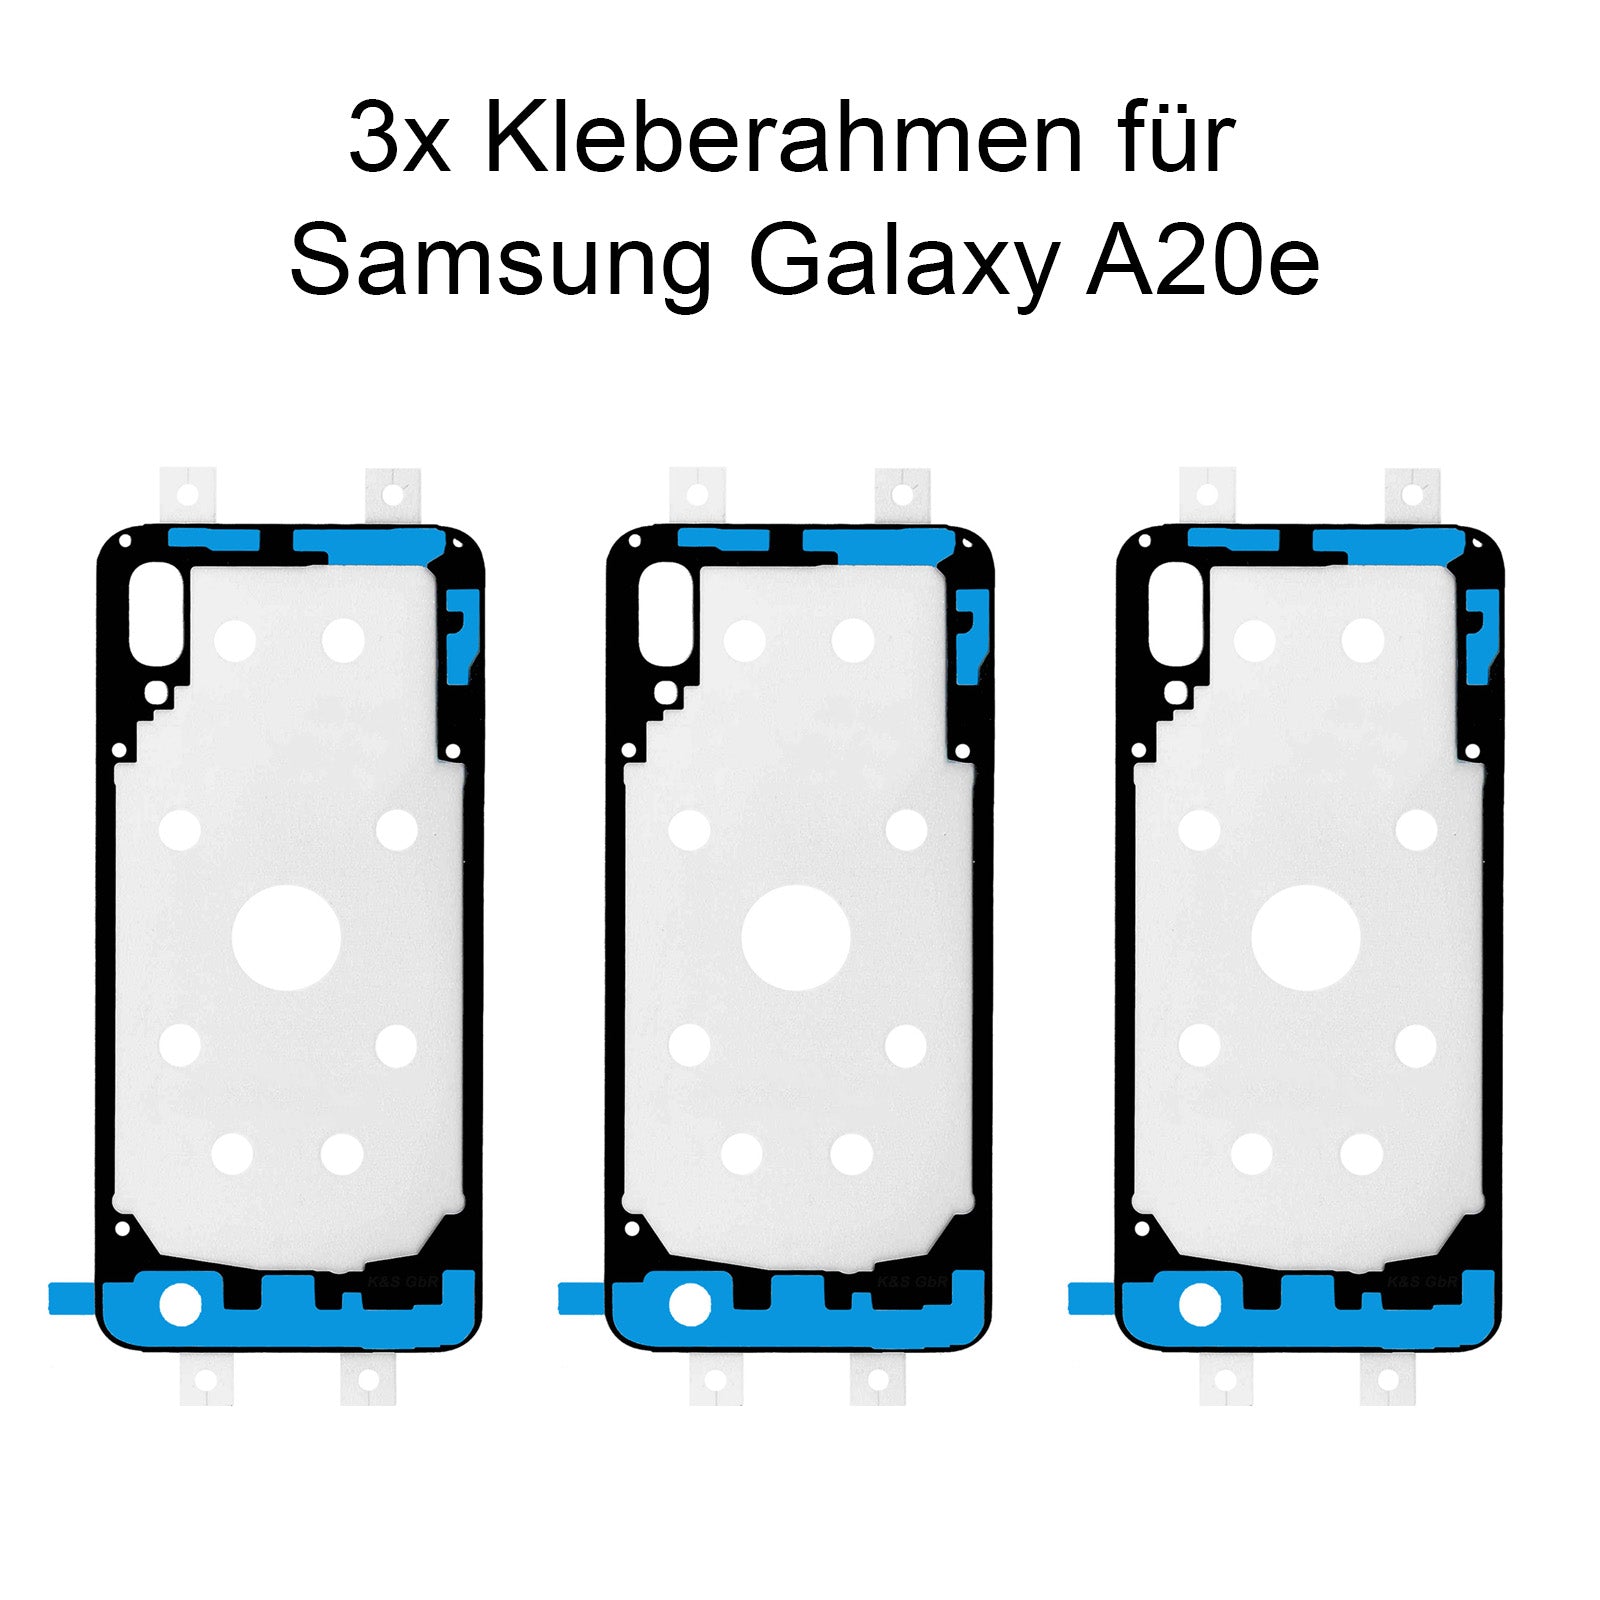 3x Kleberahmen für das Samsung Galaxy A20e, SM-A202. Klebepad, Adhesive Wasser Dichtung, im Dinngs Onlineshop entdecken und bestellen!